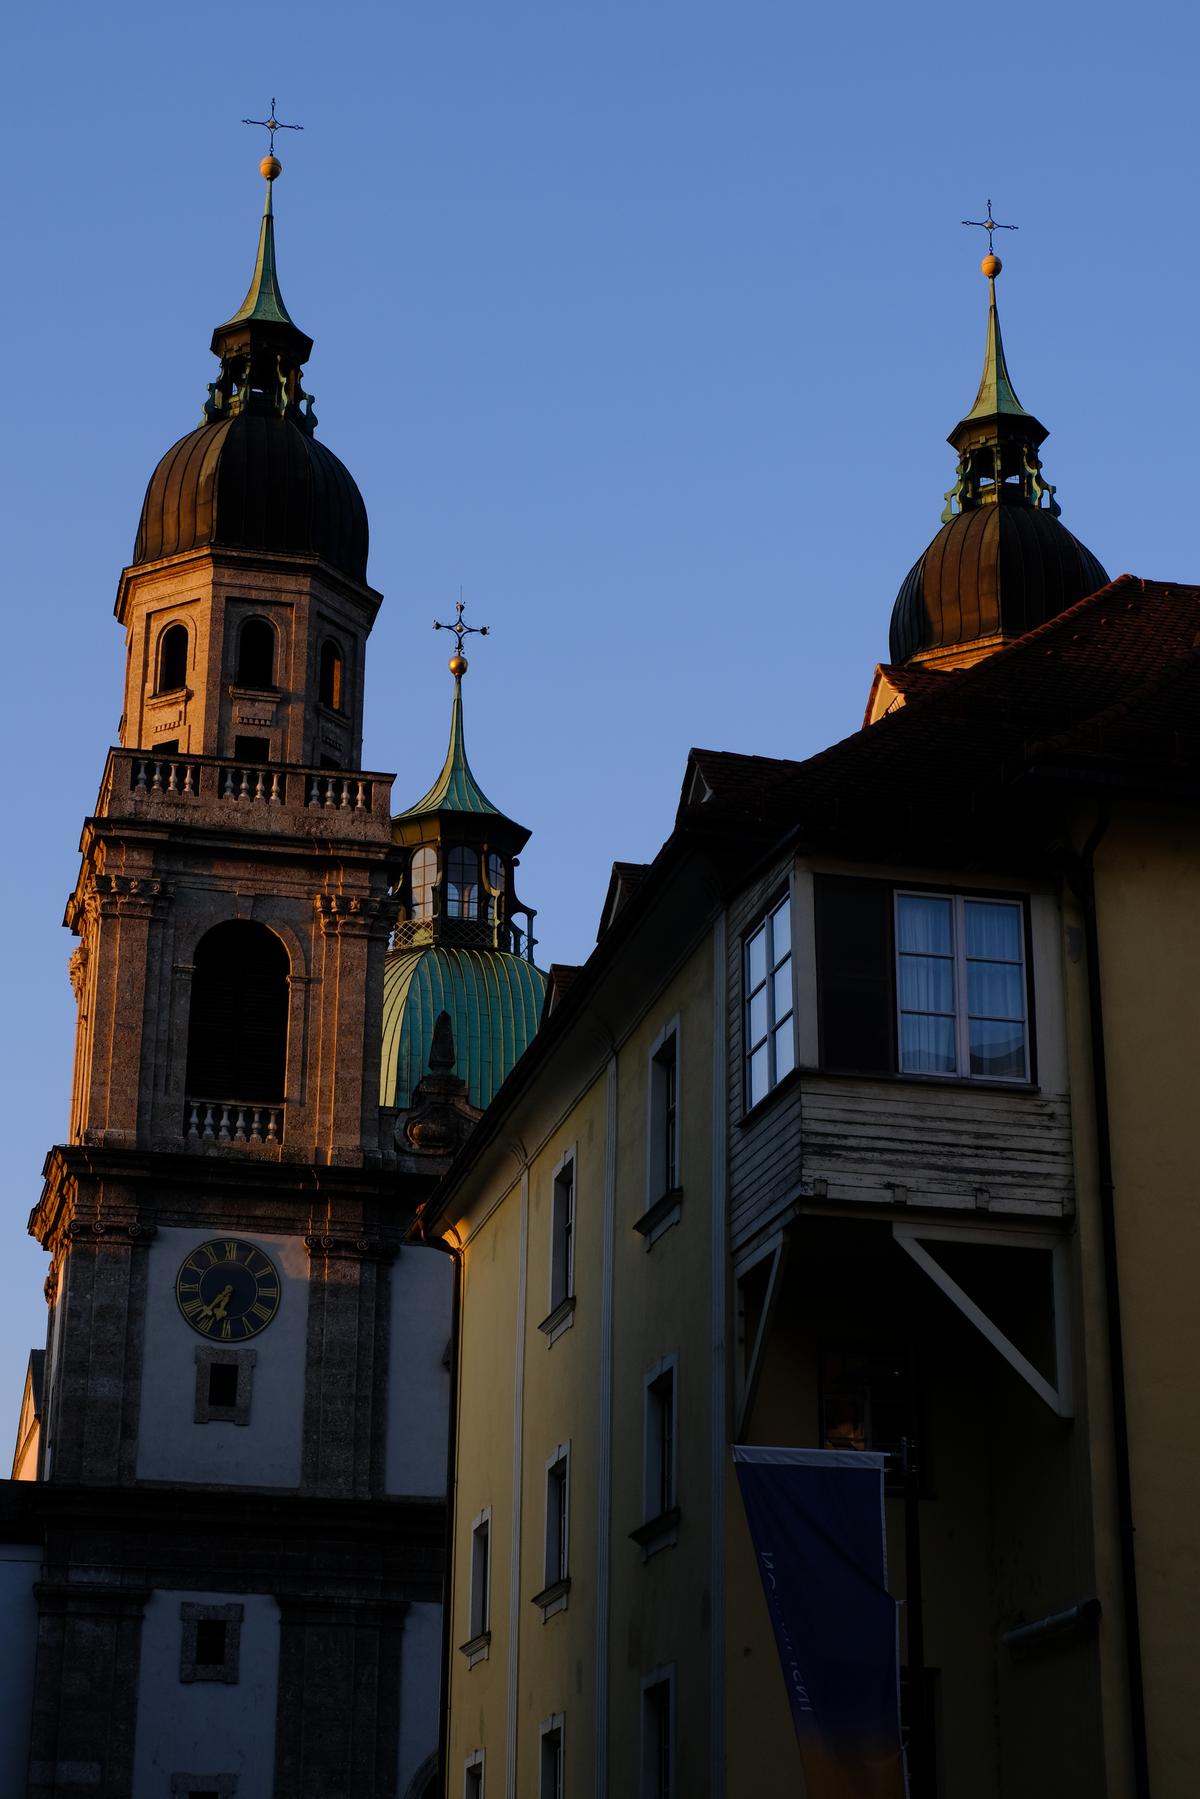 Beautiful old buildings against the sky in Innsbruck, Austria